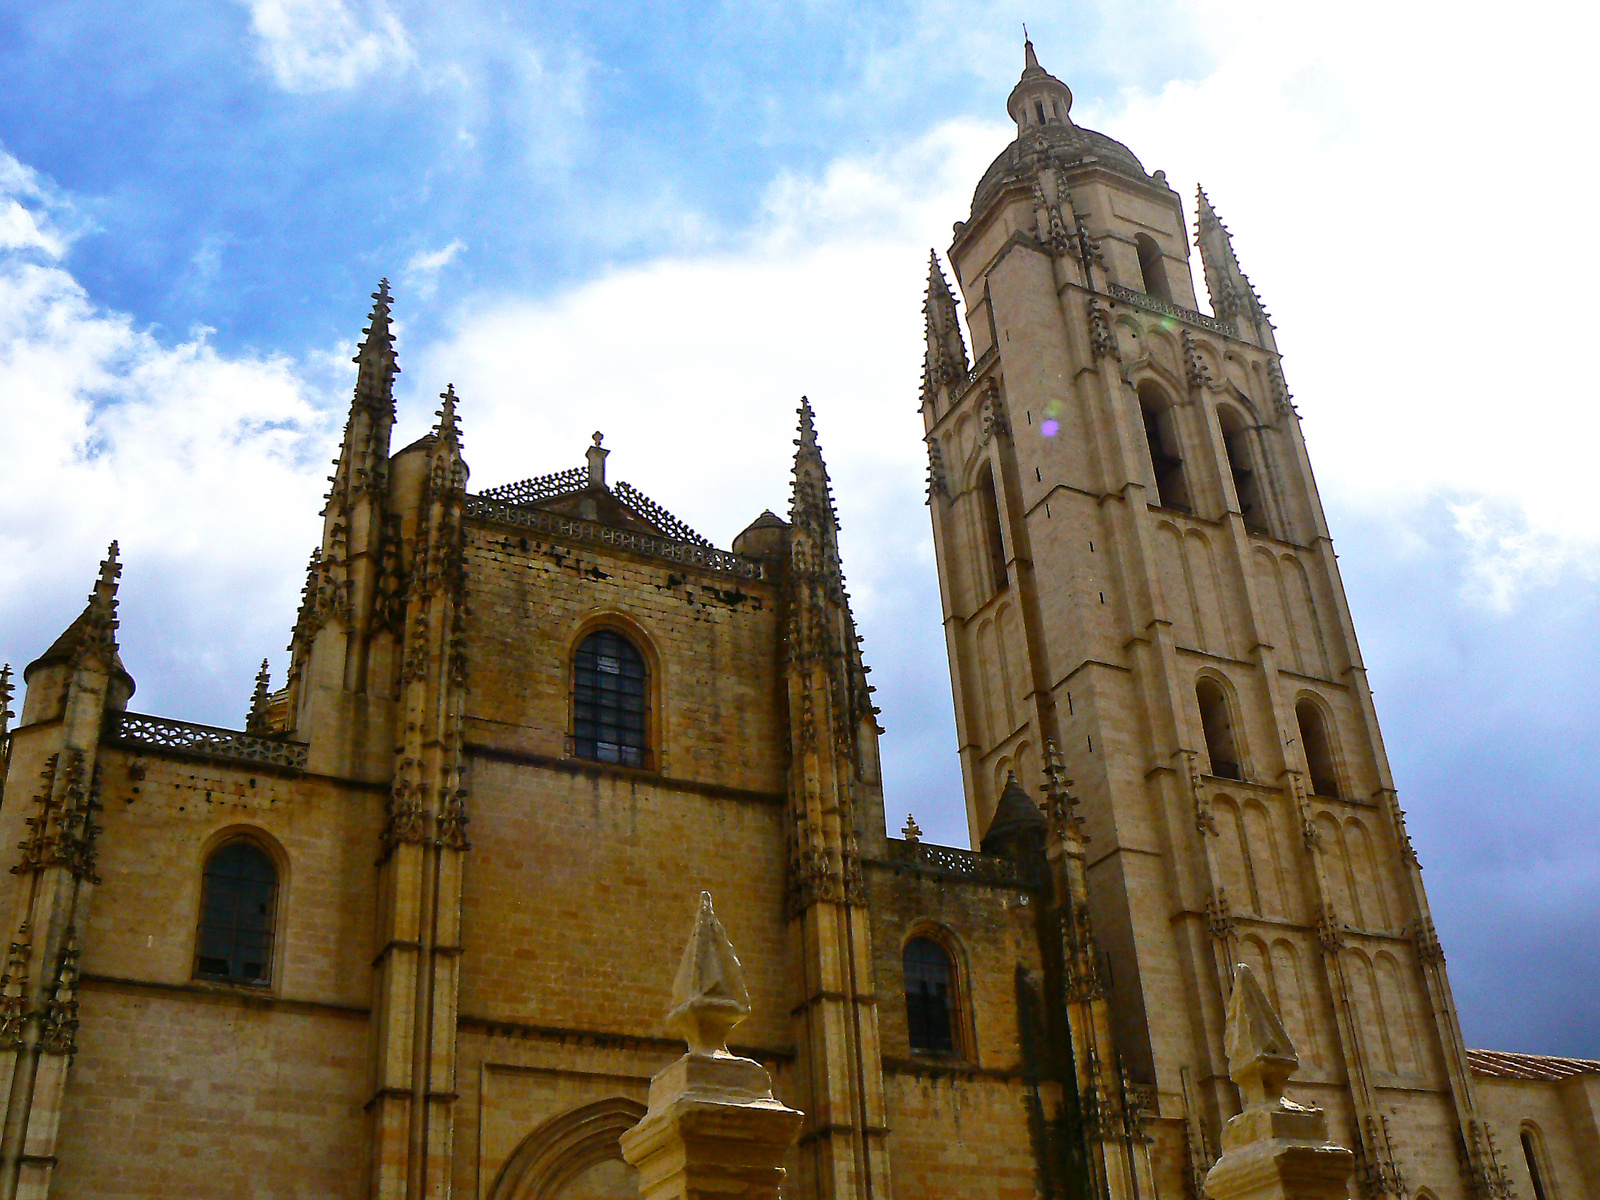 Templomok királynője (Segovia)